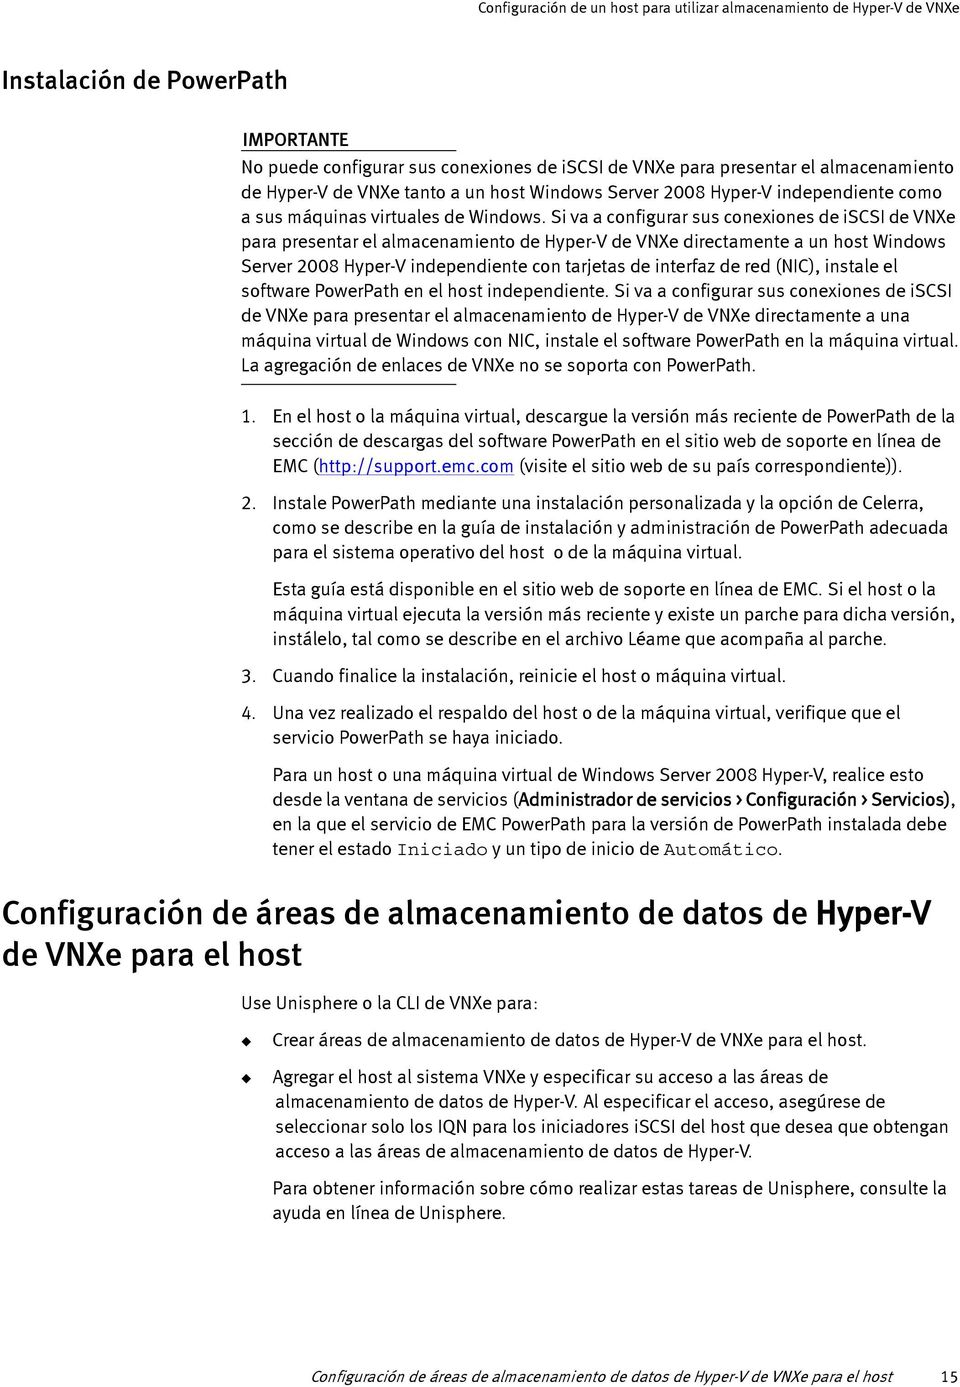 Si va a configurar sus conexiones de iscsi de VNXe para presentar el almacenamiento de Hyper-V de VNXe directamente a un host Windows Server 2008 Hyper-V independiente con tarjetas de interfaz de red